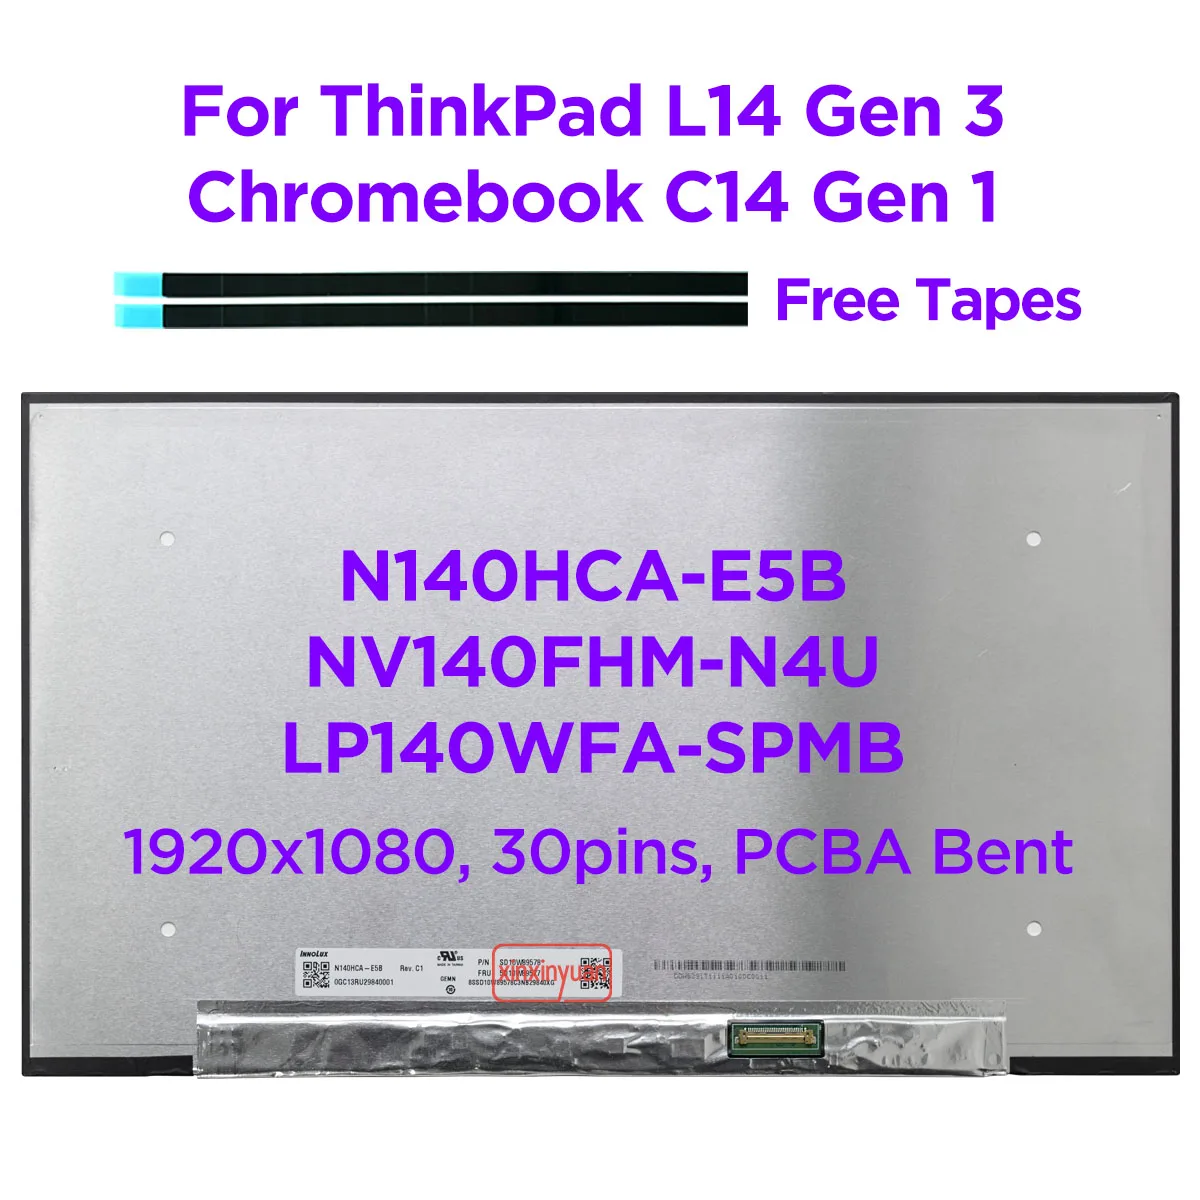 

14.0 IPS Laptop LCD Screen N140HCA-E5B Fit NV140FHM-N4U LP140WFA-SPMB for ThinkPad L14 Gen 3 C14 Gen 1 Chromebook Display 30pins